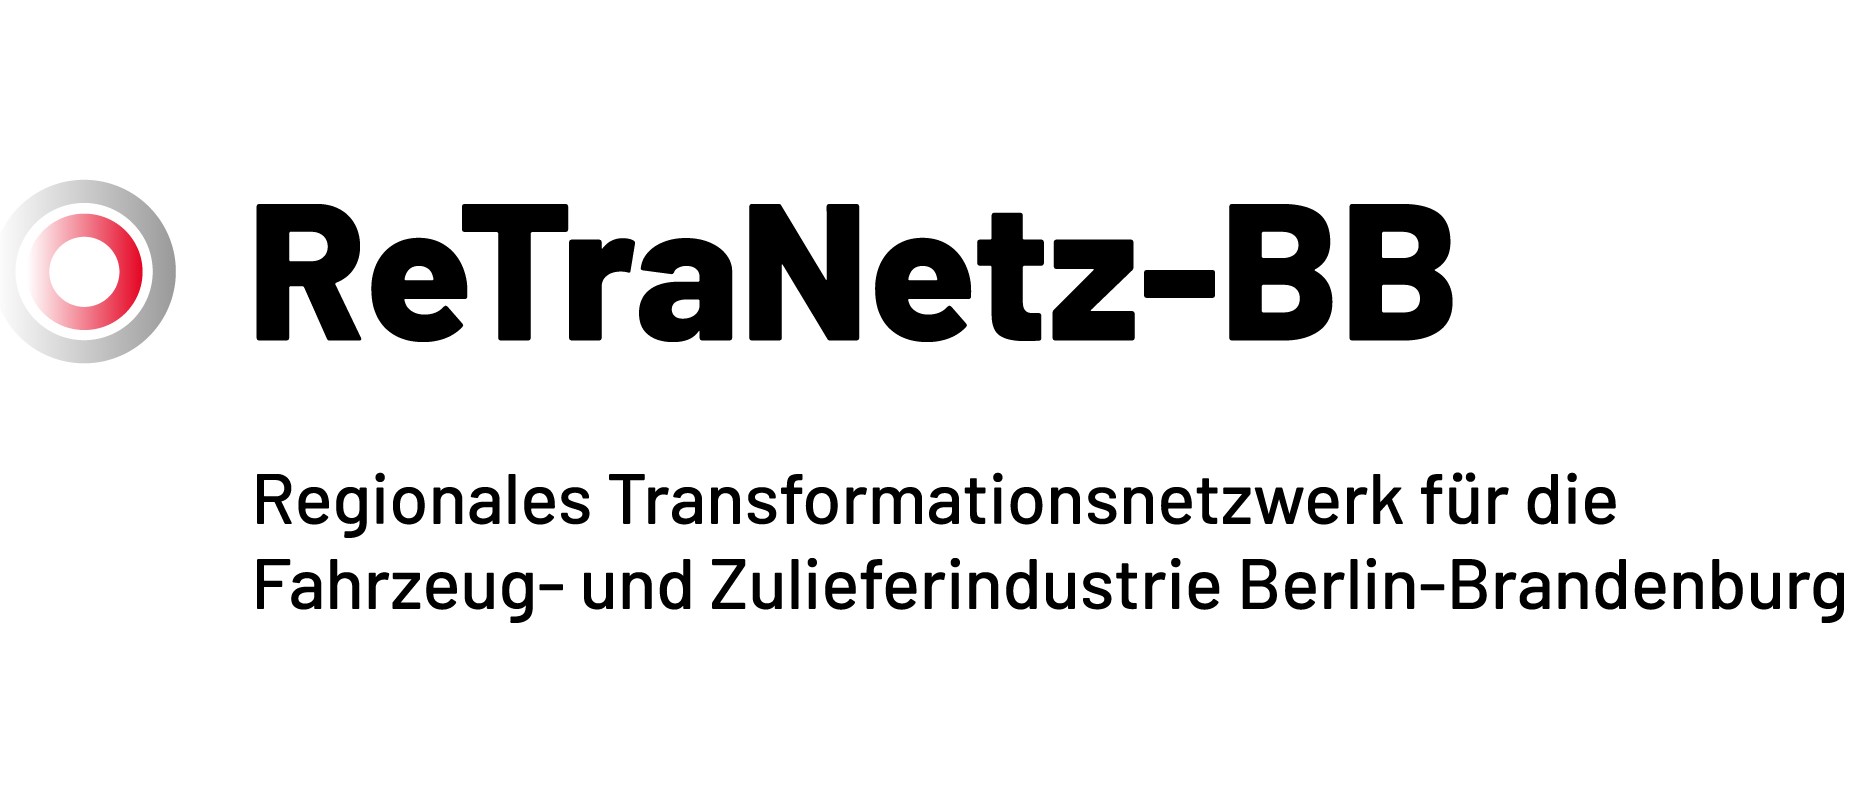 Regionales Transformationsnetzwerk für die Fahrzeugindustrie Berlin-Brandenburg